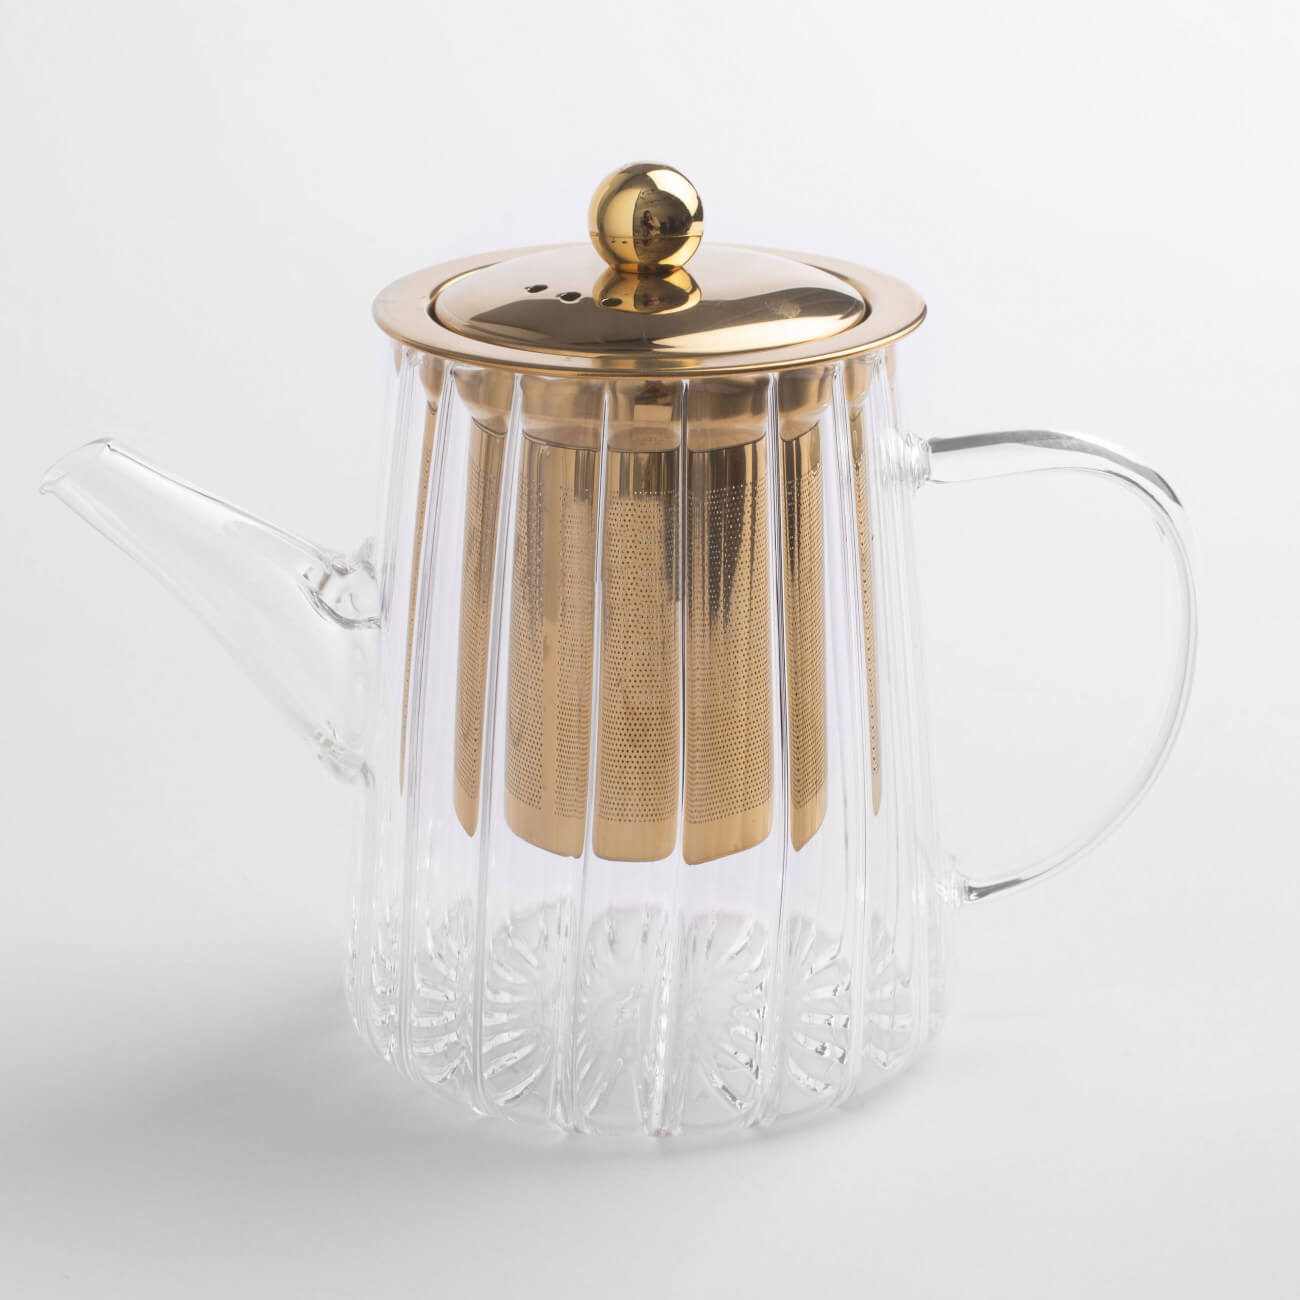 Чайник заварочный, 600 мл, стекло Б/сталь, золотистый, Camellia gold чайник заварочный влюбленные коты 900 мл